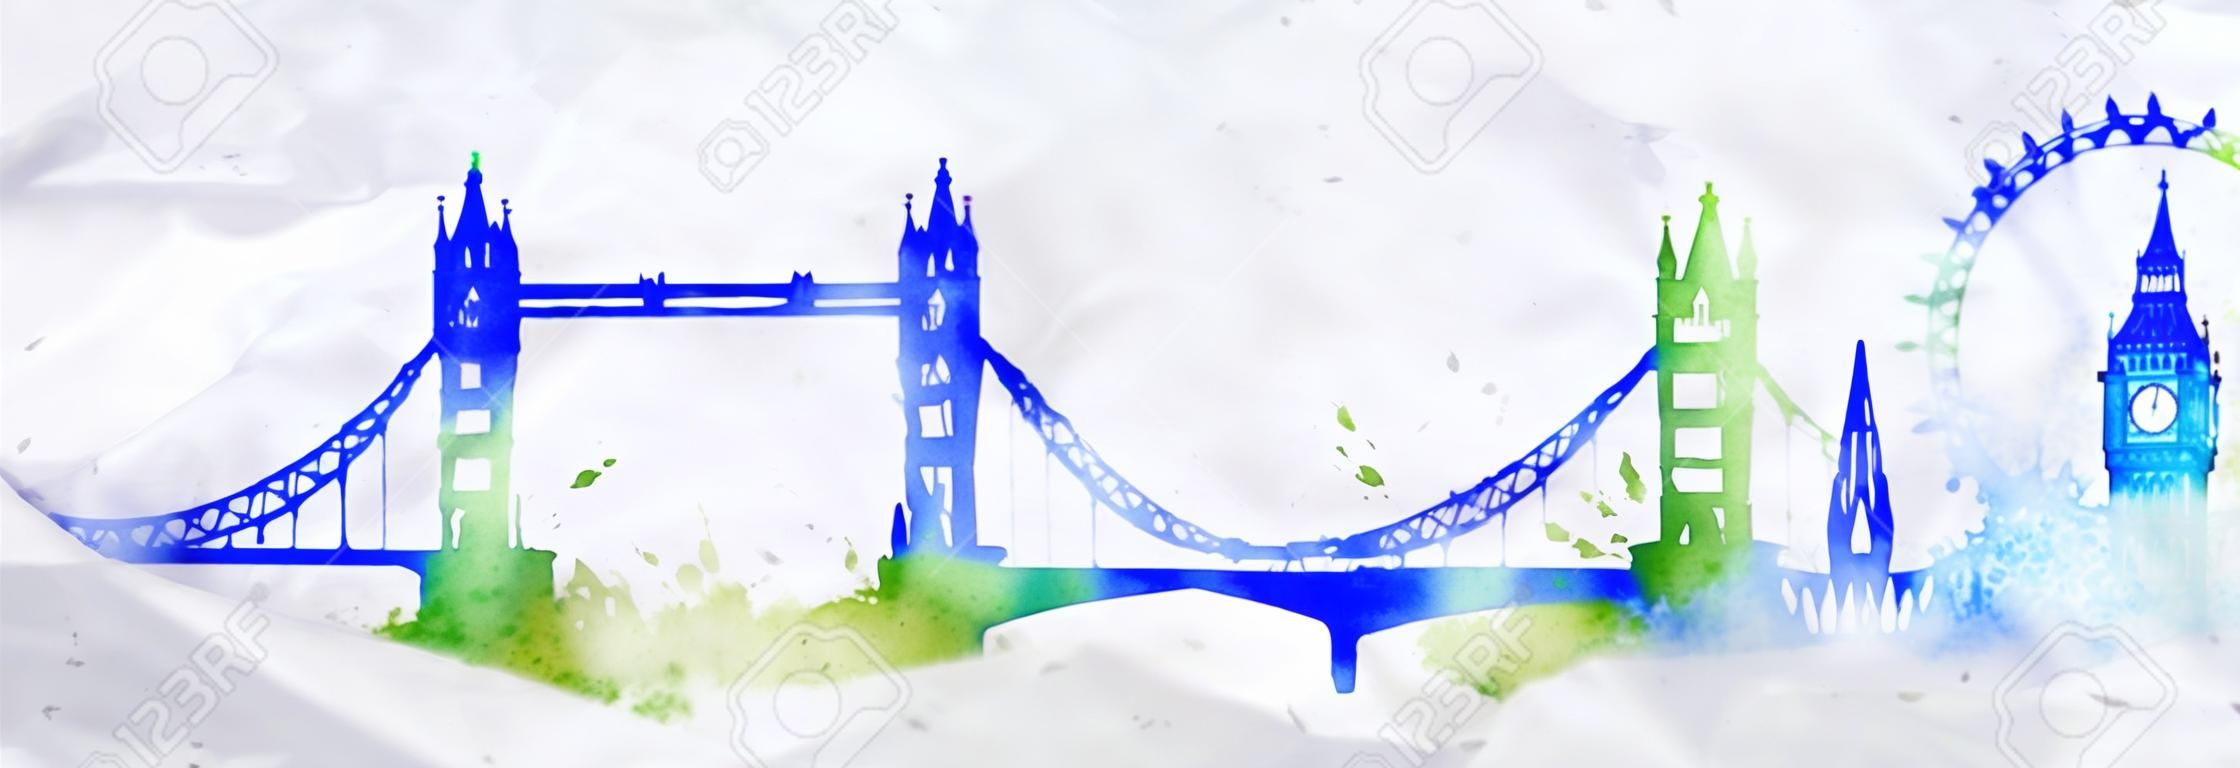 剪影伦敦市画与水彩水滴飞溅条纹与蓝绿色的标志性建筑